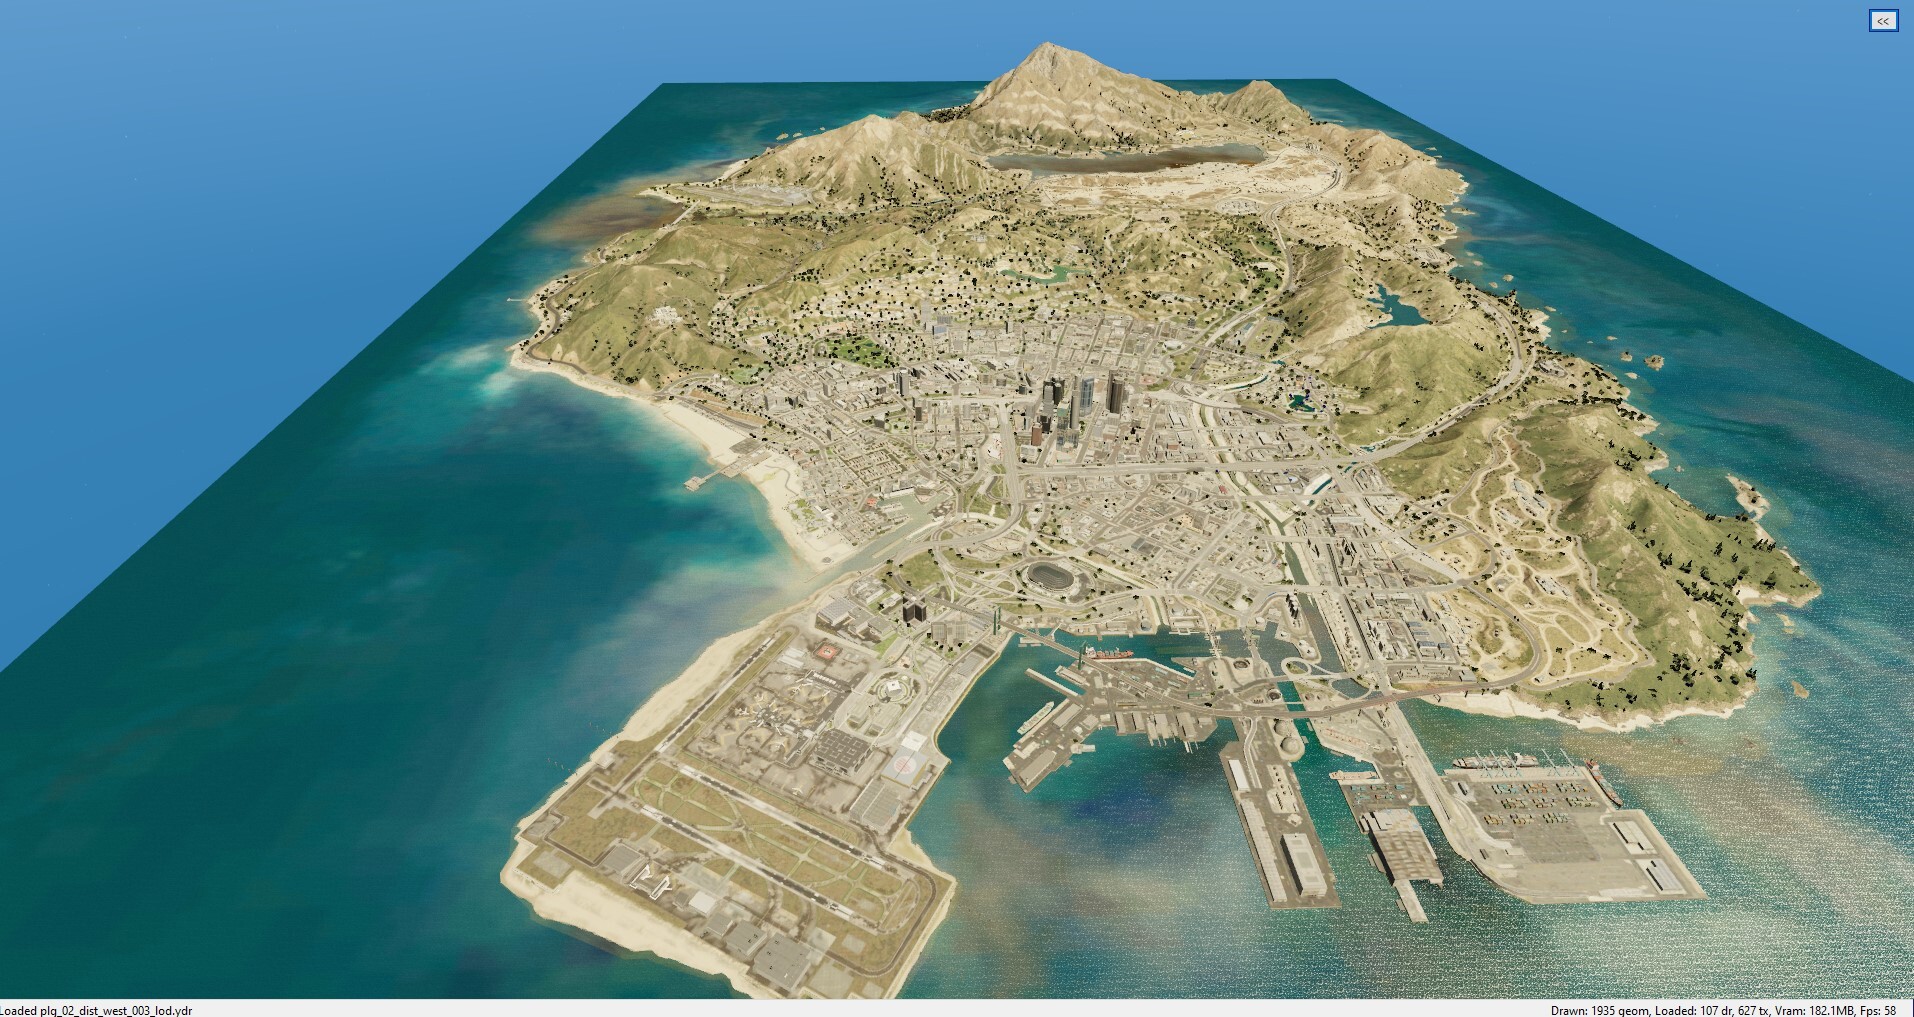 Designer imprime em 3D o mapa do GTA V: levou 400 horas para ser